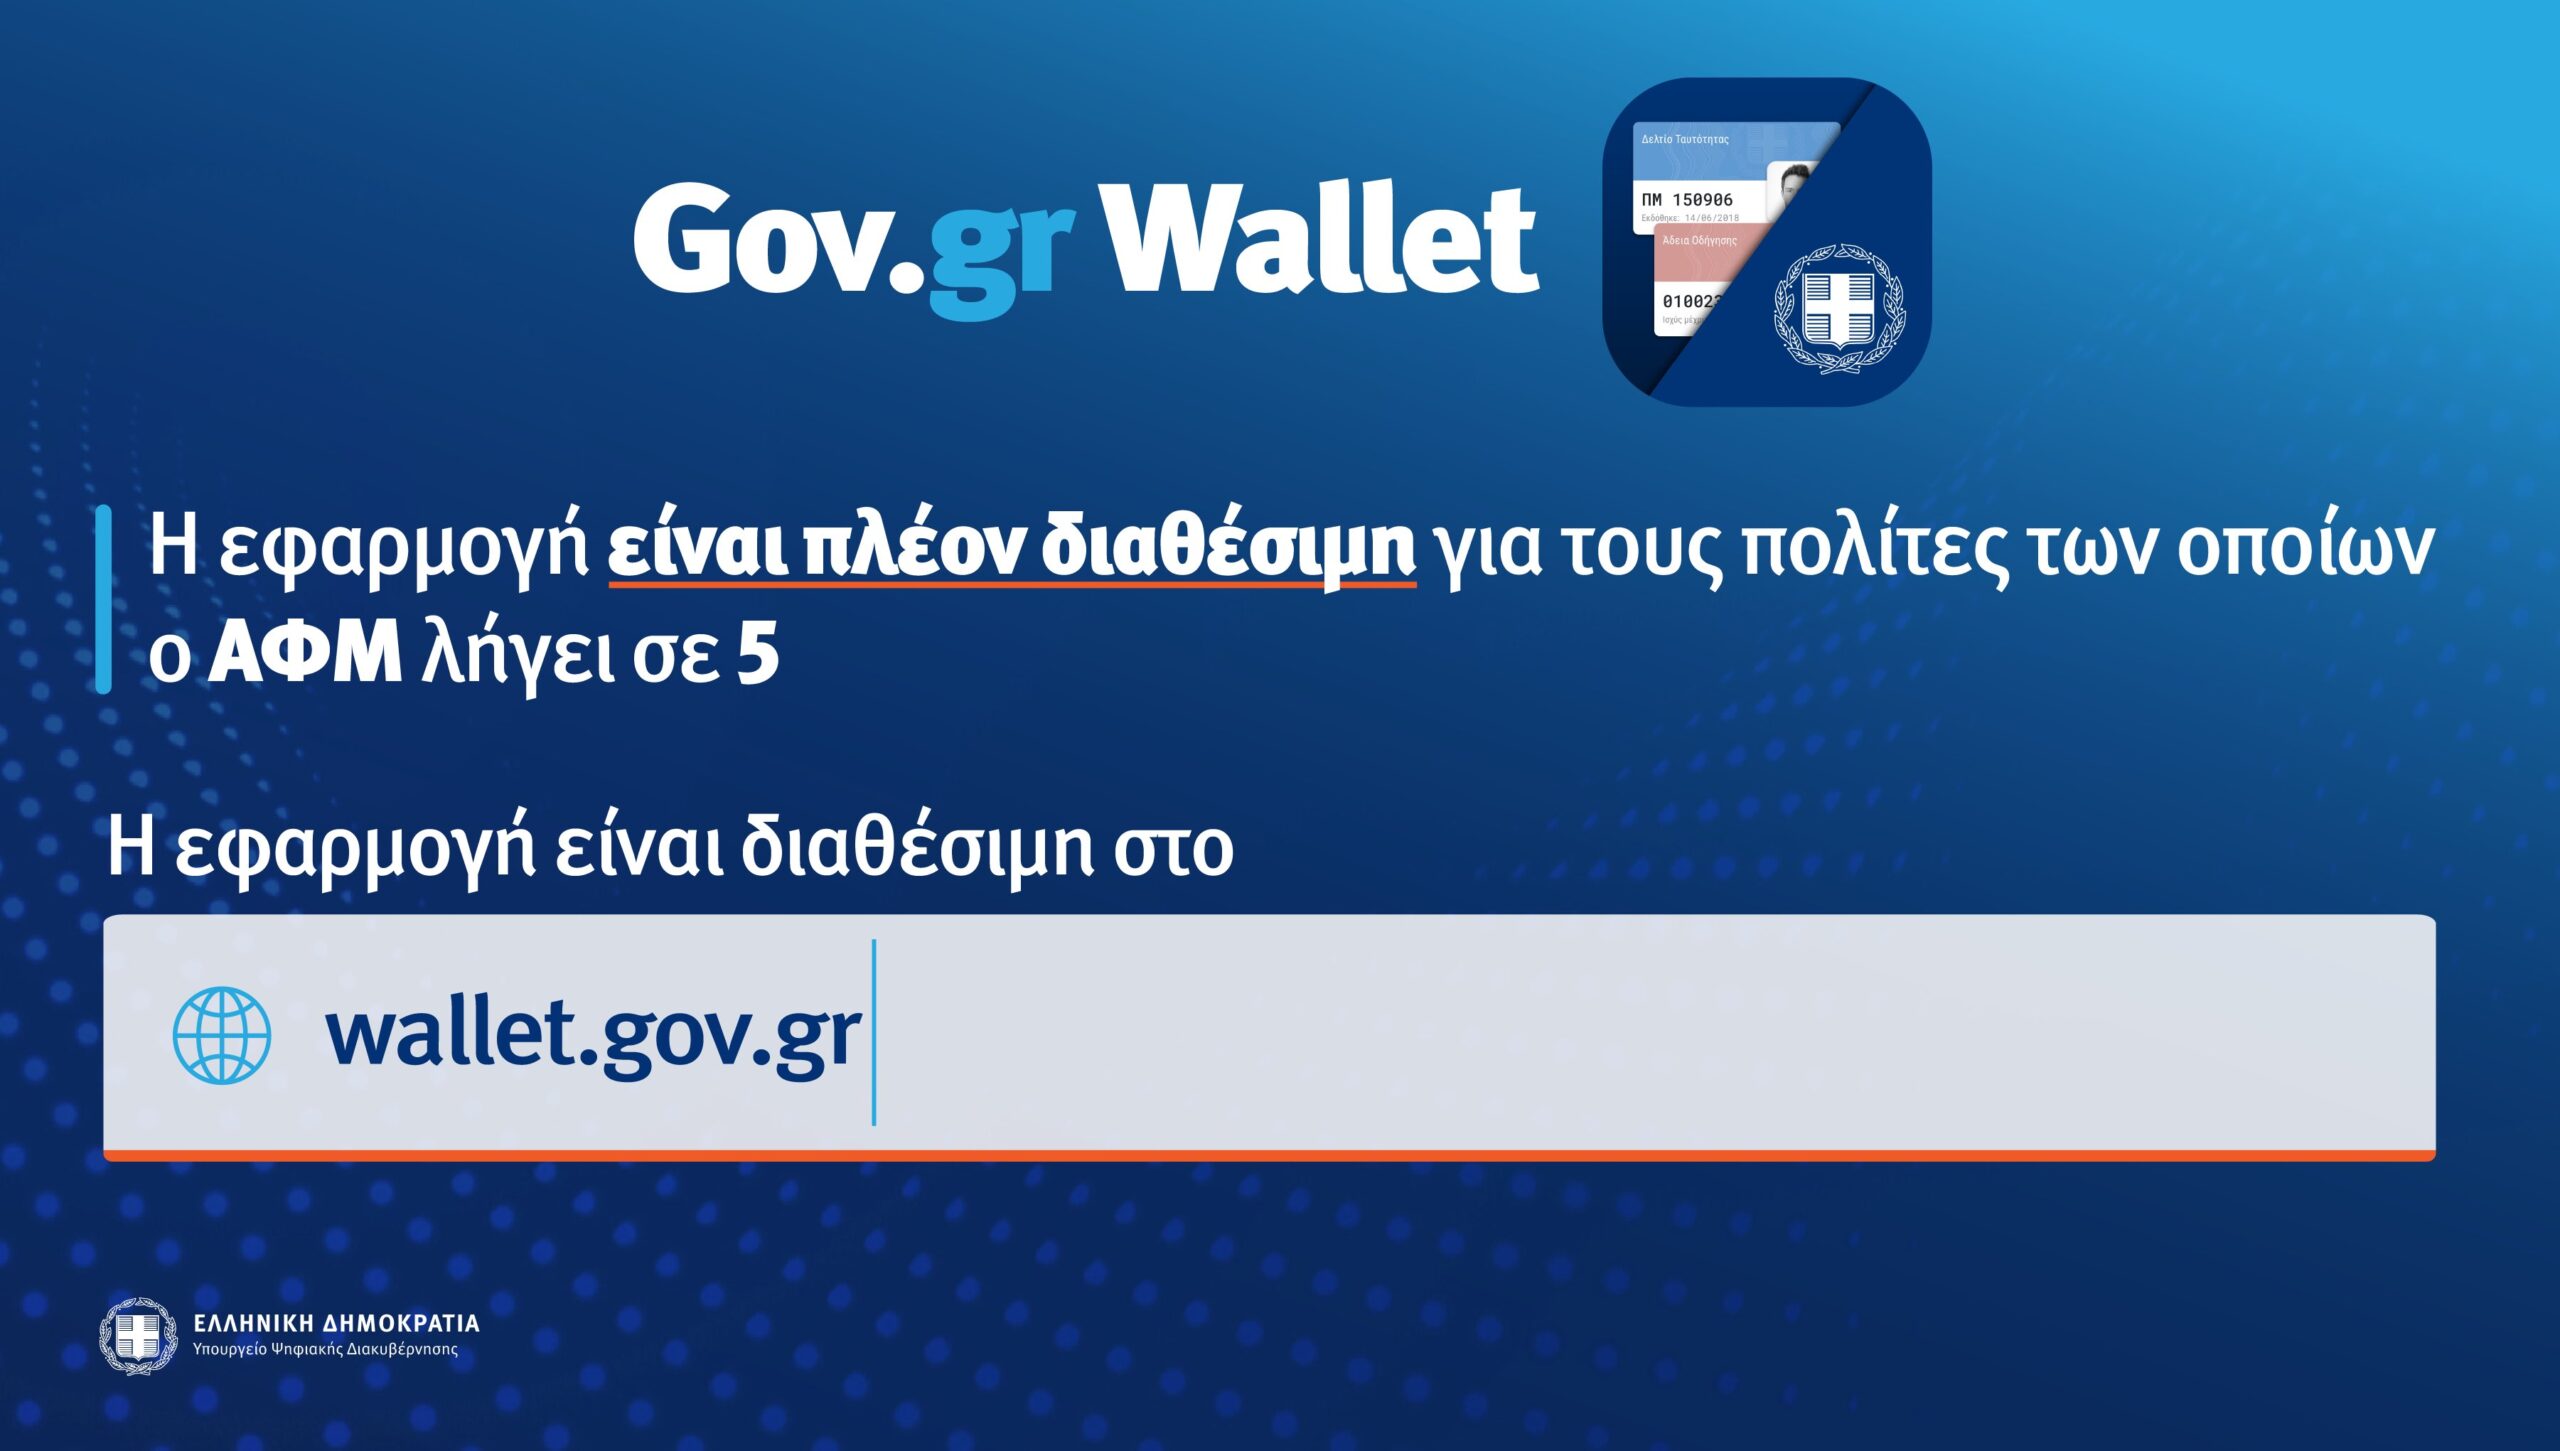 Gov.gr Wallet Η εφαρμογή διαθέσιμη για ΑΦΜ που λήγουν από 1 έως και 5.